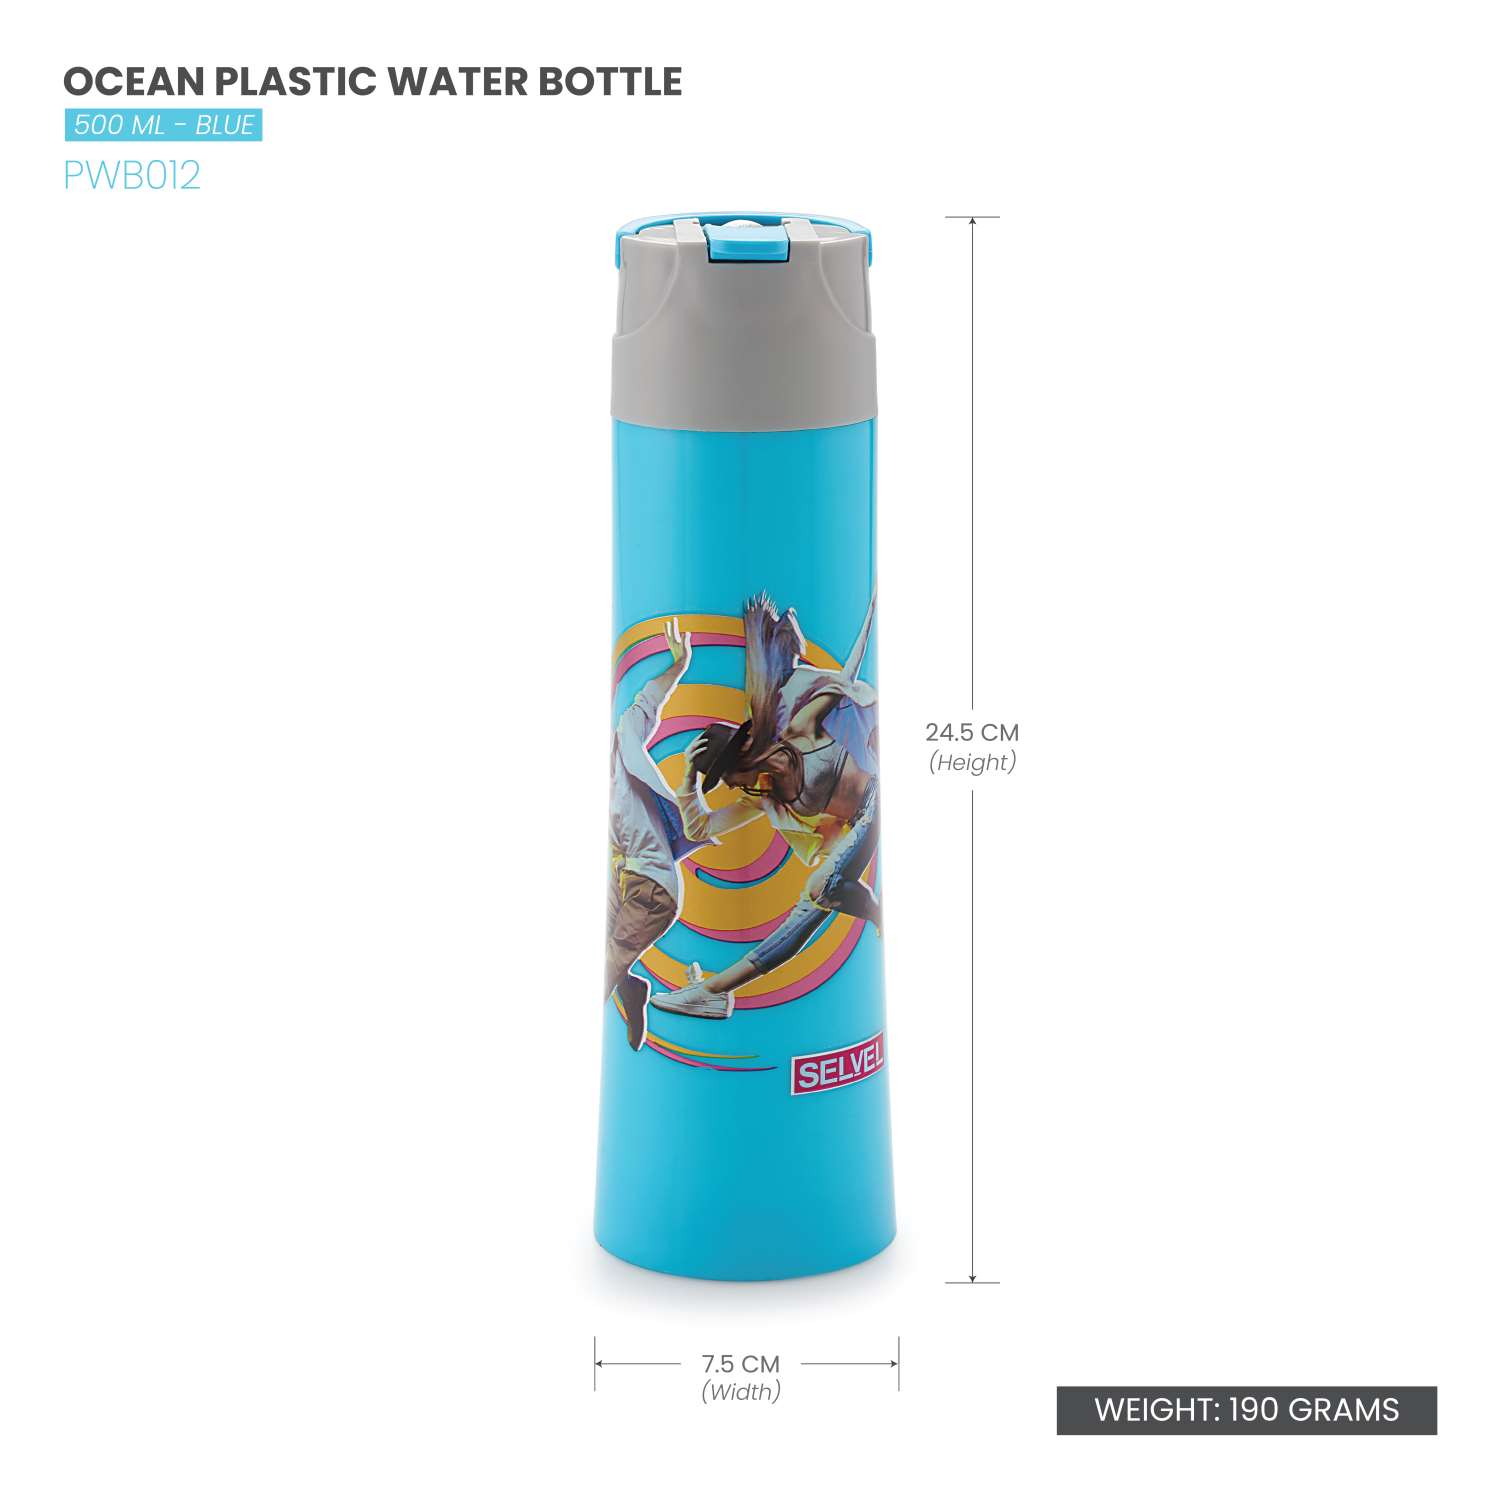 Selvel Ocean Plastic Water Bottle Sky Blue 500Ml